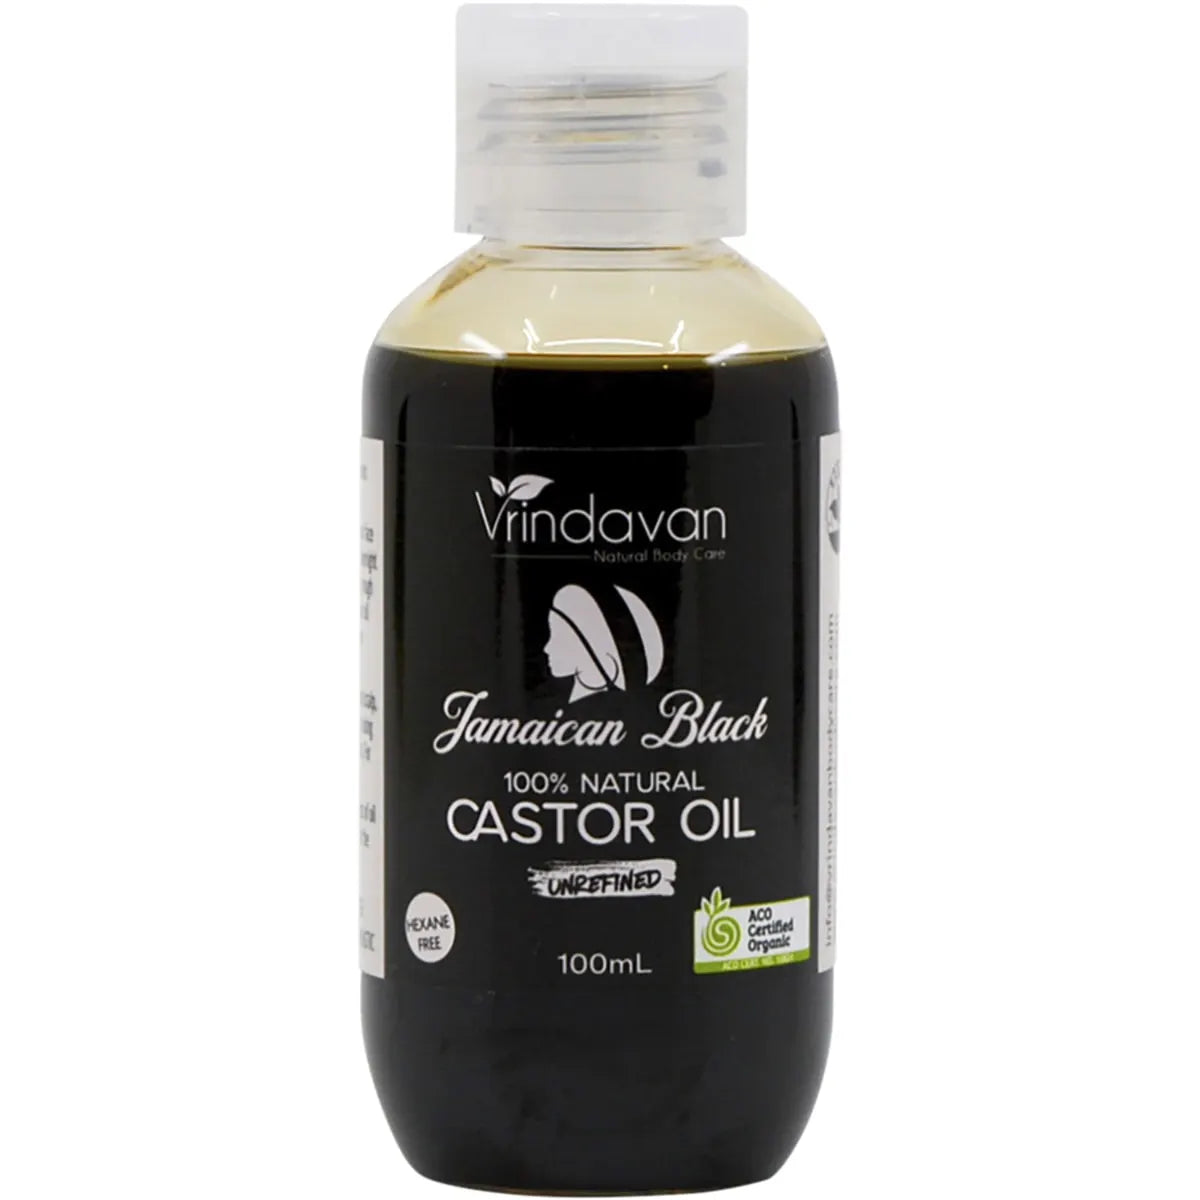 VRINDAVAN Jamaican Black Certified Organic Castor Oil Unrefined 100ml